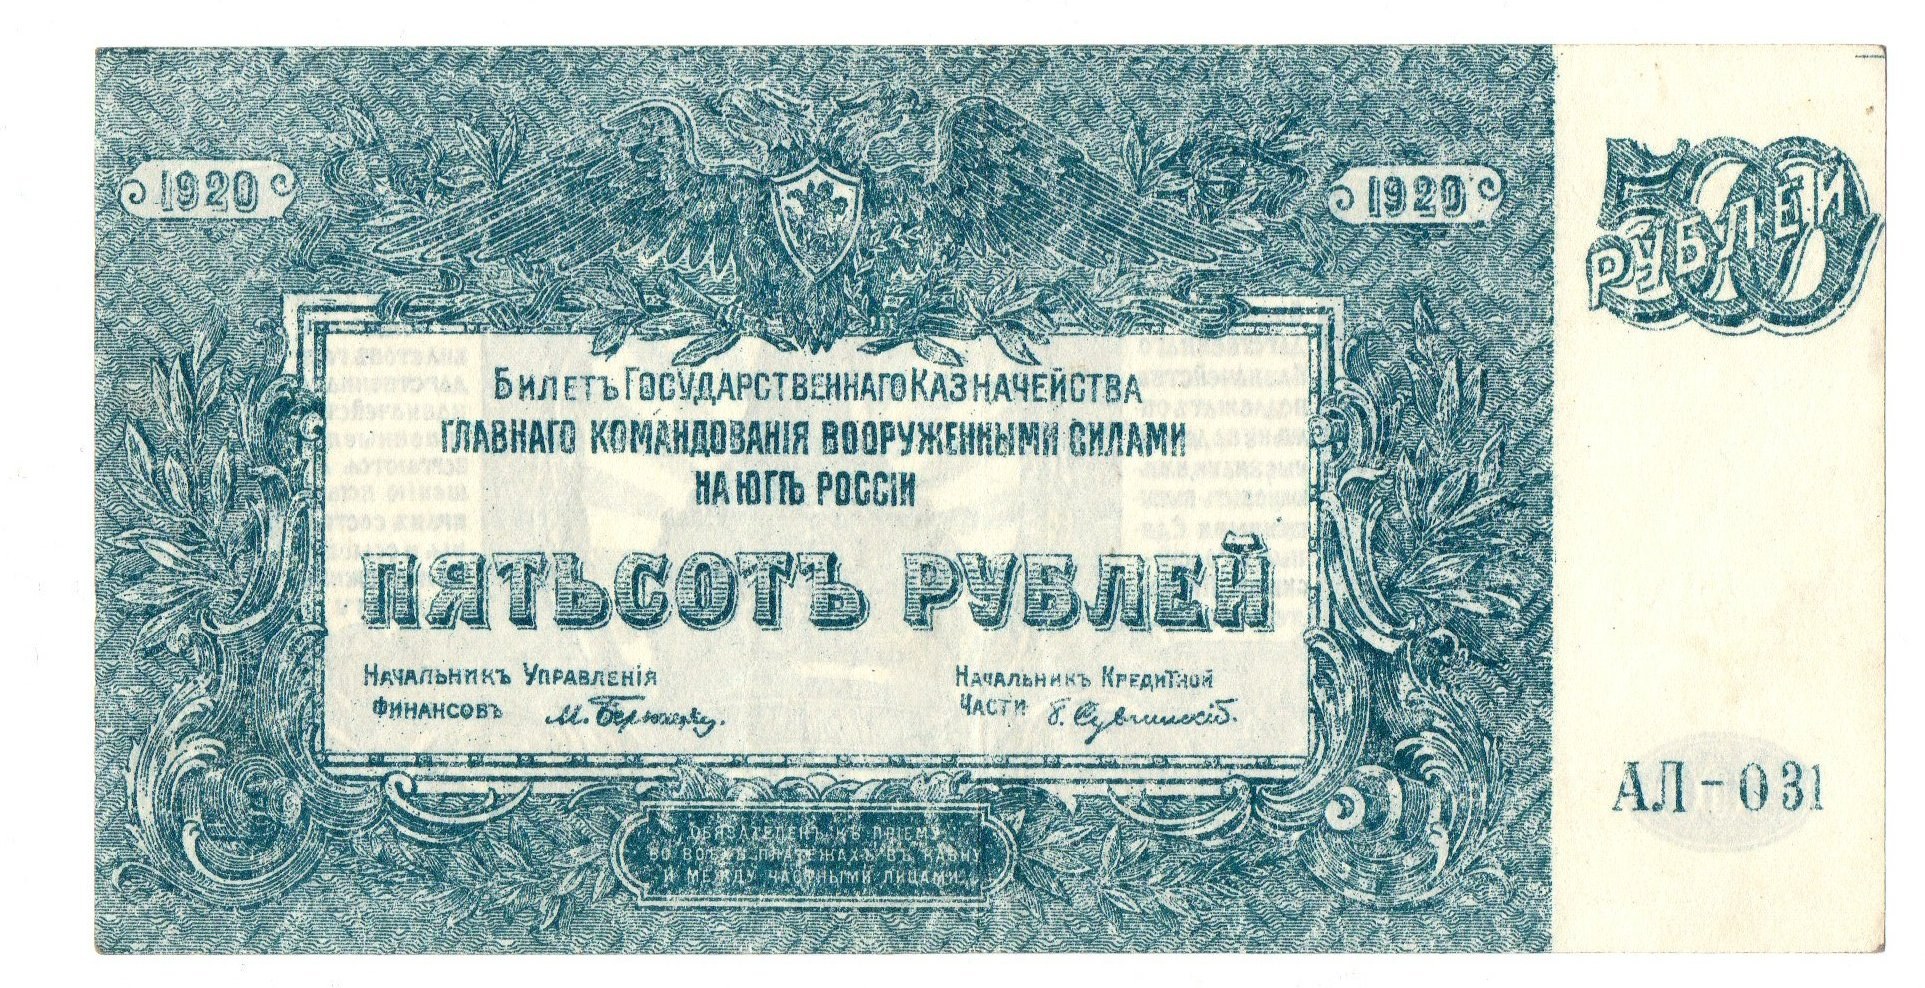 250 рублей билет. Рубль 1920 года. Банкноты ВСЮР. Билеты государственного казначейства. 1000 Рублей 1920 года.